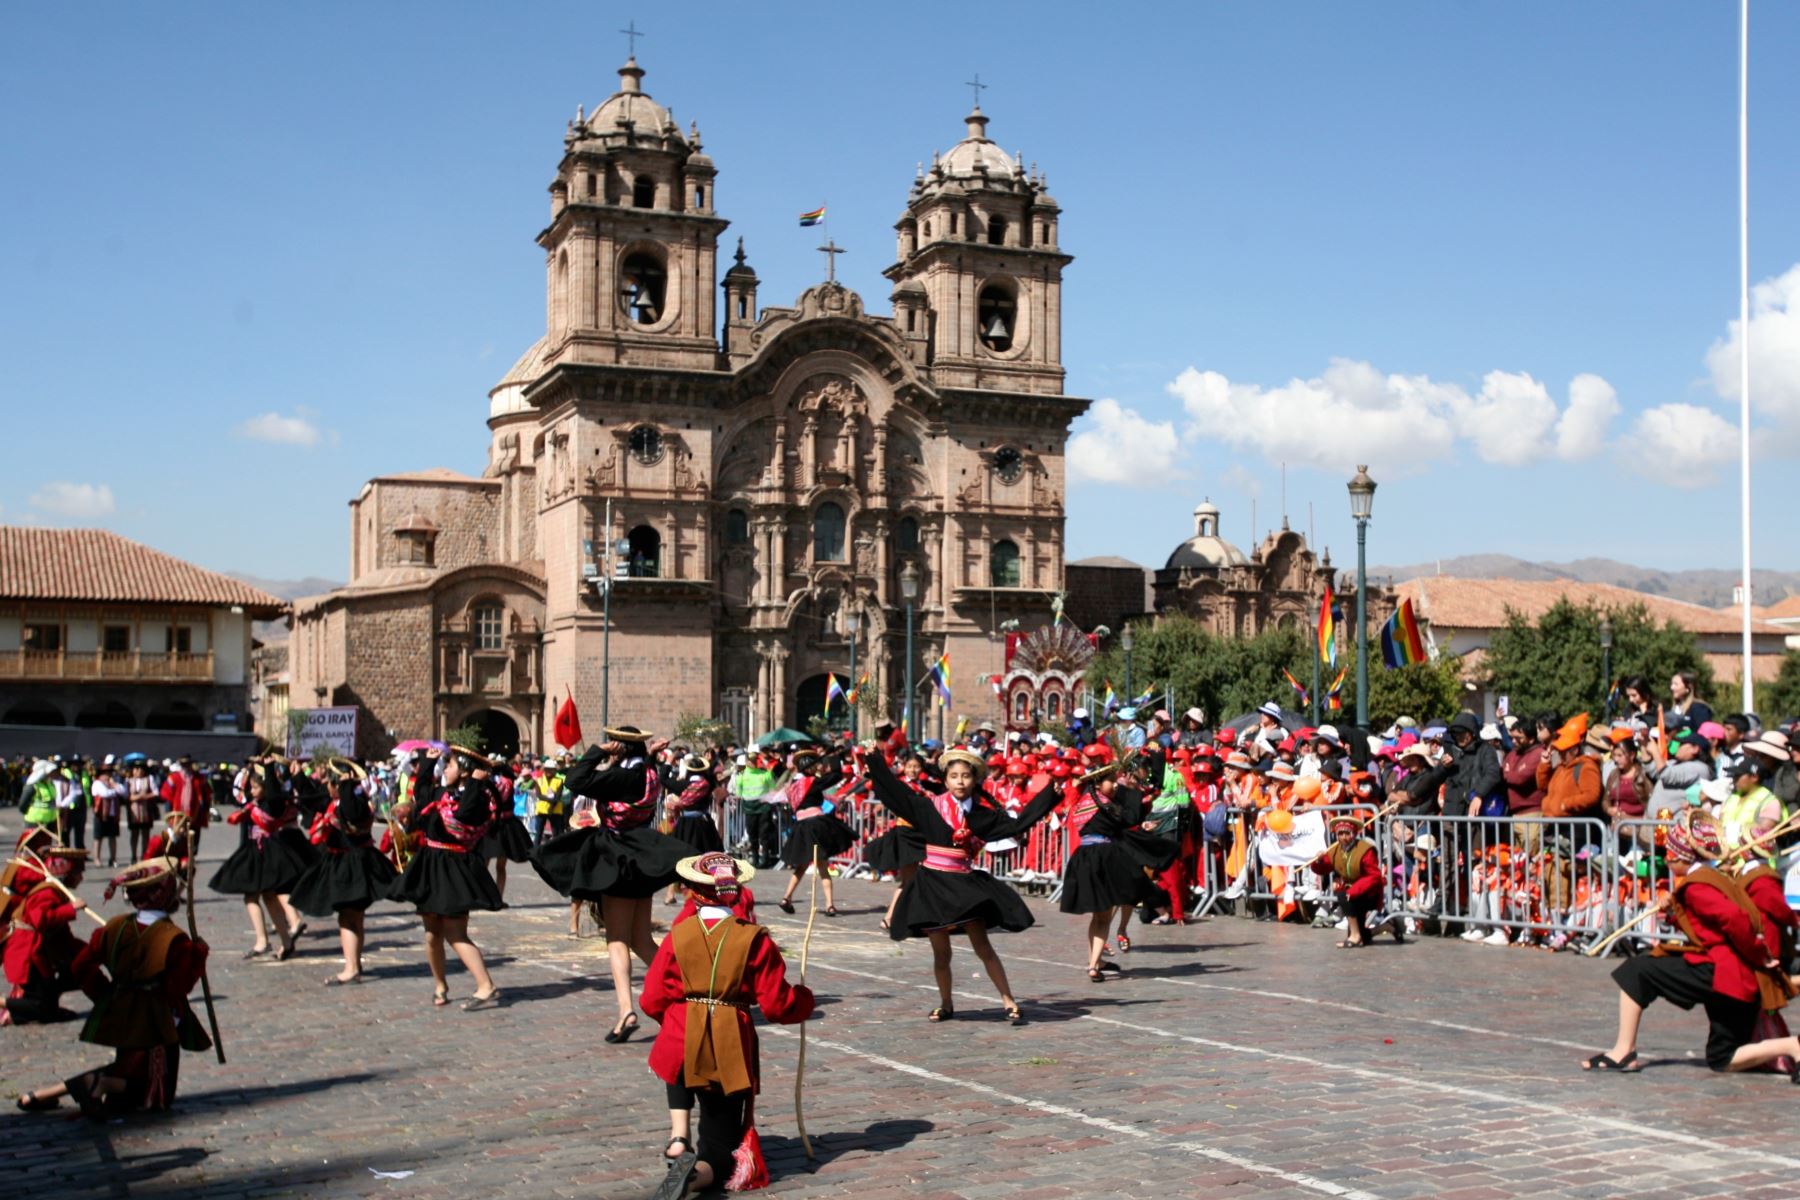 Escolares hicieron gala de destreza artística en el saludo al Cusco por su mes jubilar. Foto: ANDINA/Percy Hurtado Santillán